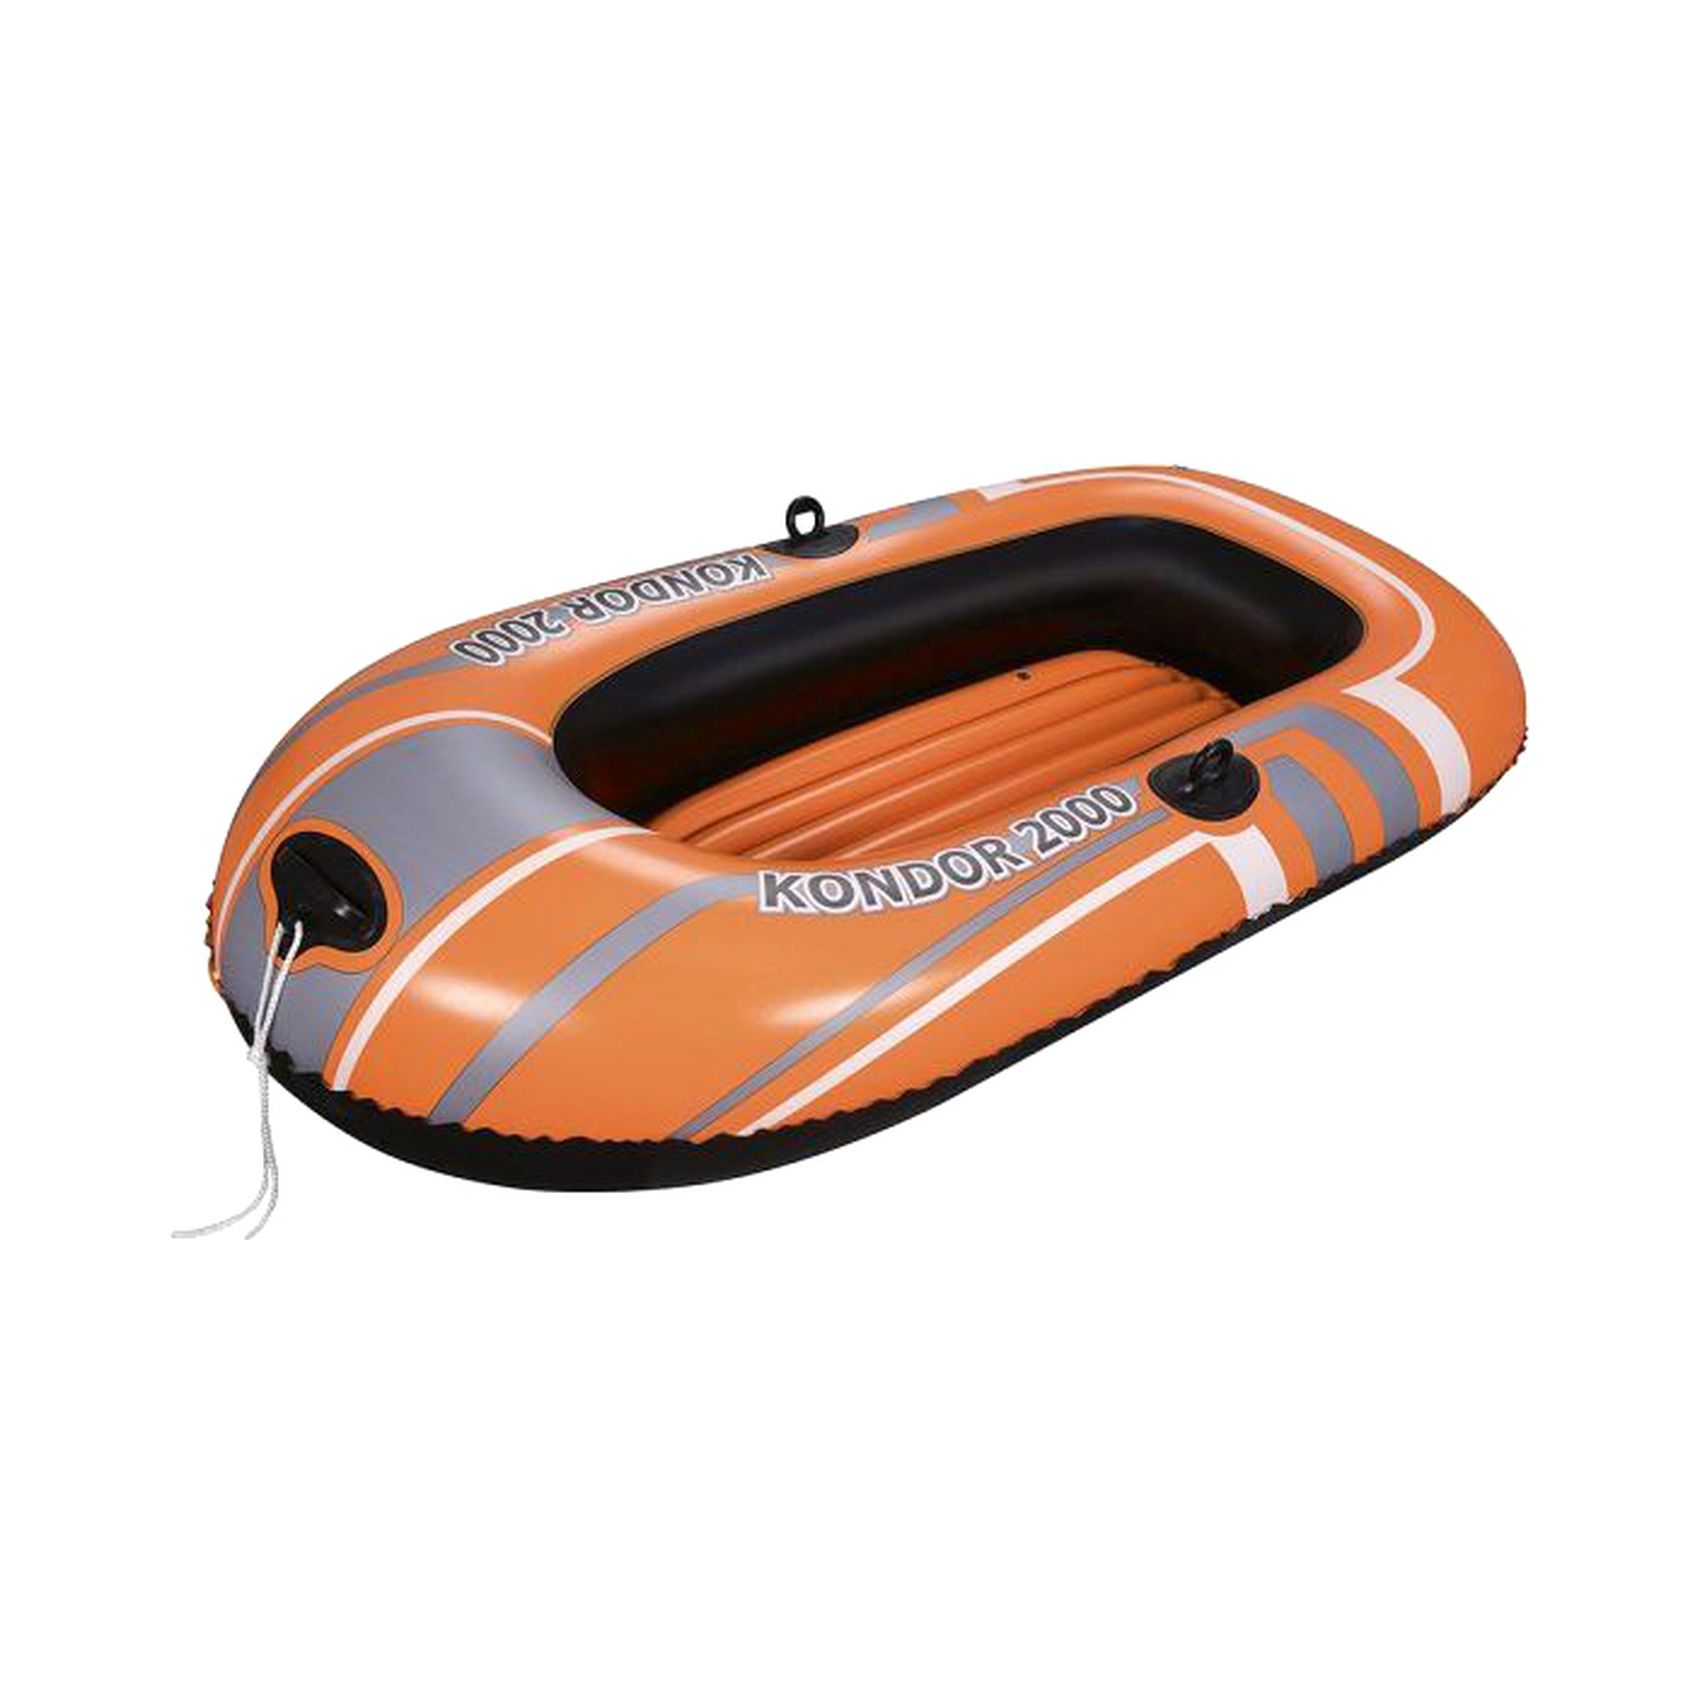 Bestway Kondor 2000 Inflatable Boat Raft 61100 Orange 196x114cm